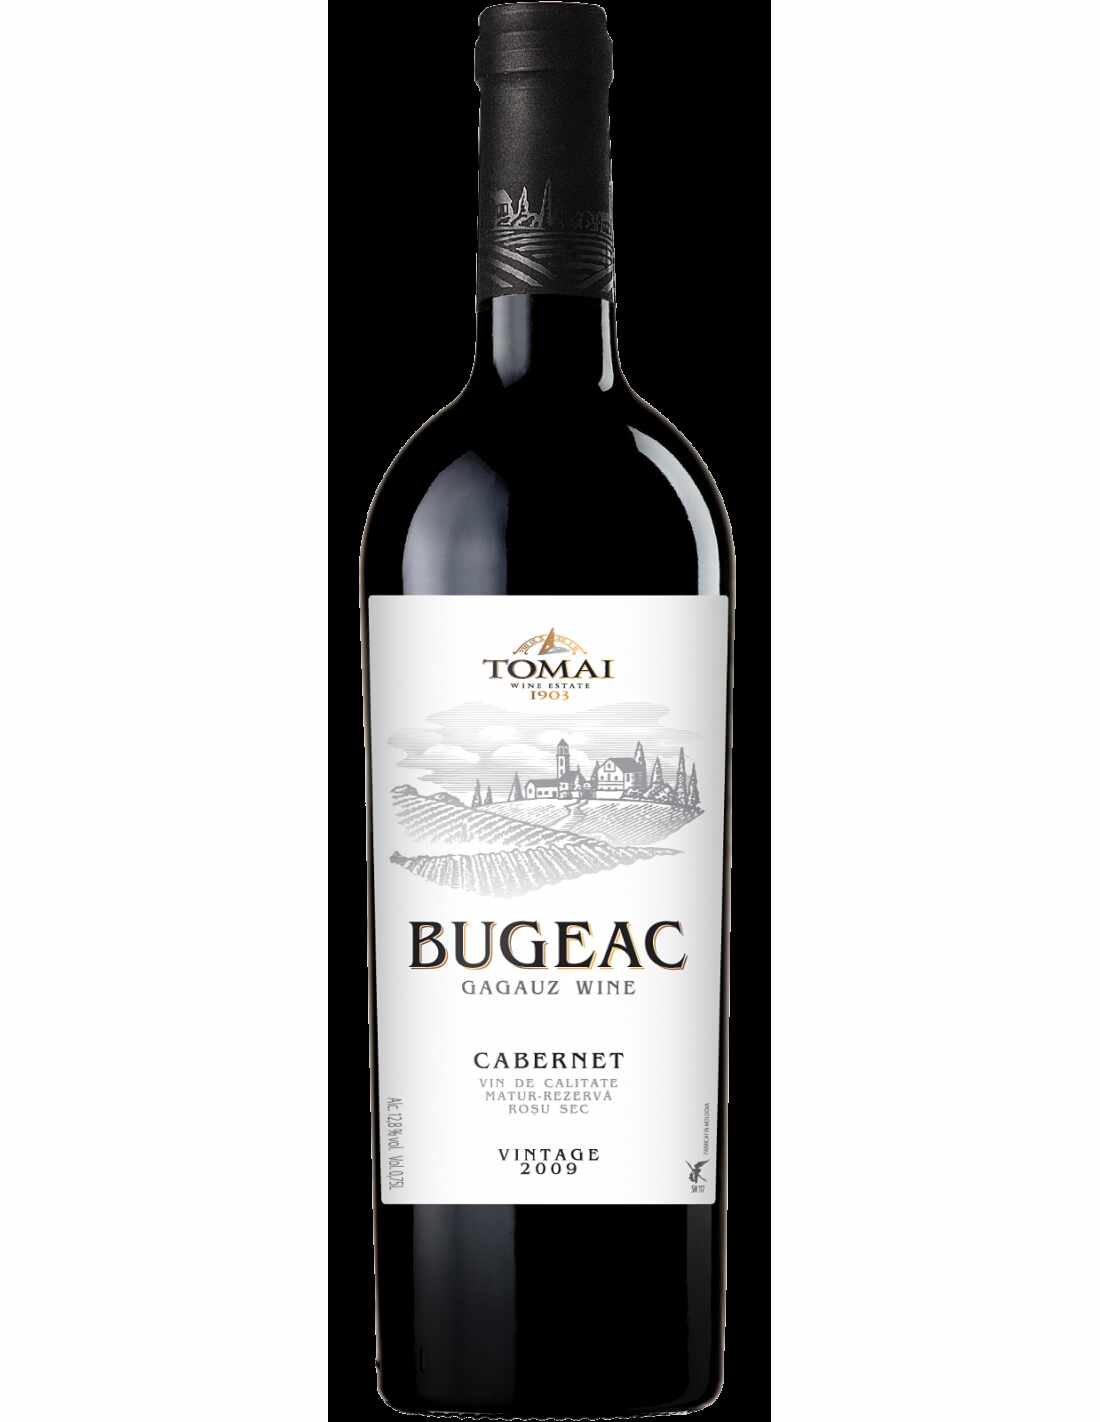 Vin rosu sec, Cabernet, Bugeac Tomai, 13% alc., 0.75L, Republica Moldova